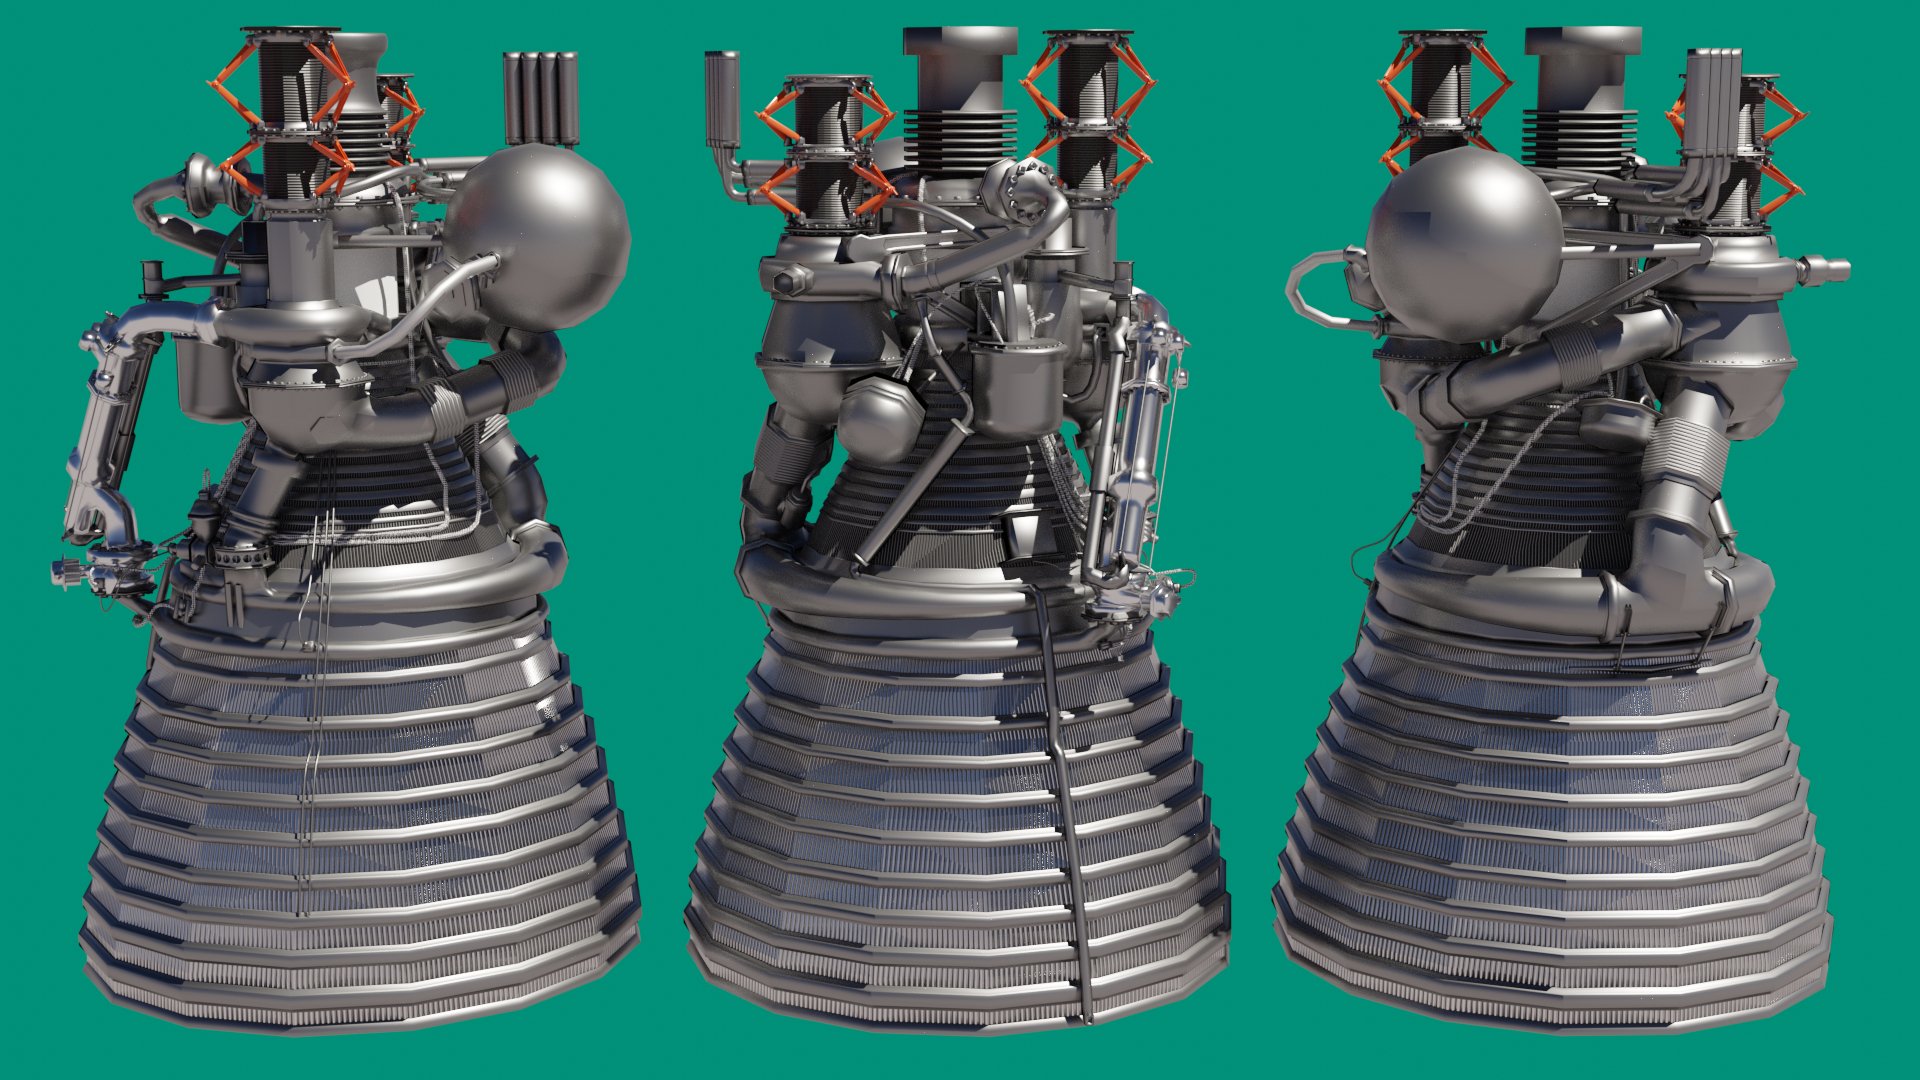 J 2 Rocket Engine 3D Model